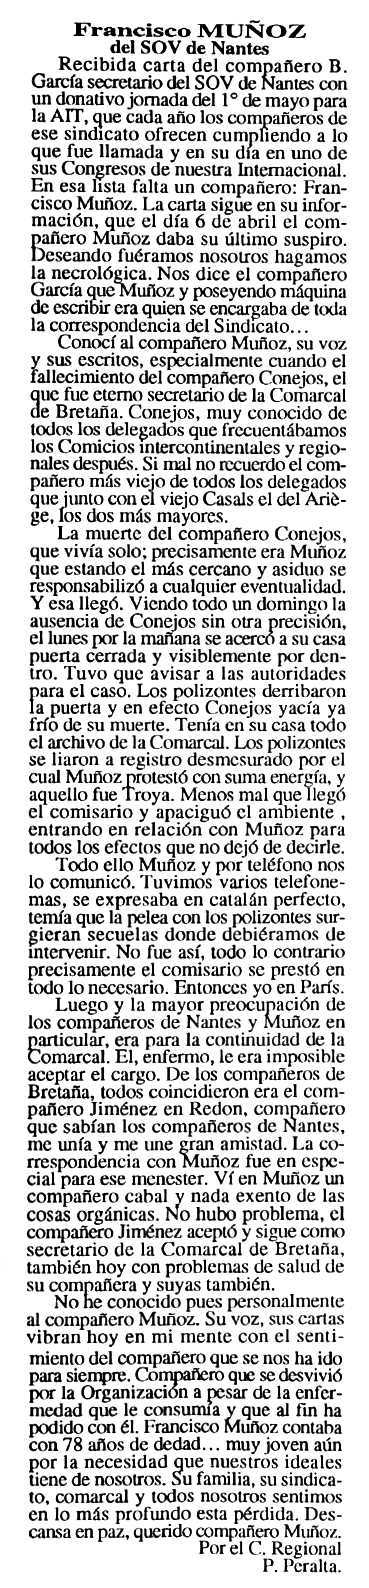 Necrològica de Francisco Muñoz Bueno apareguda en el periòdic tolsoà "Cenit" del 8 de juny de 1993